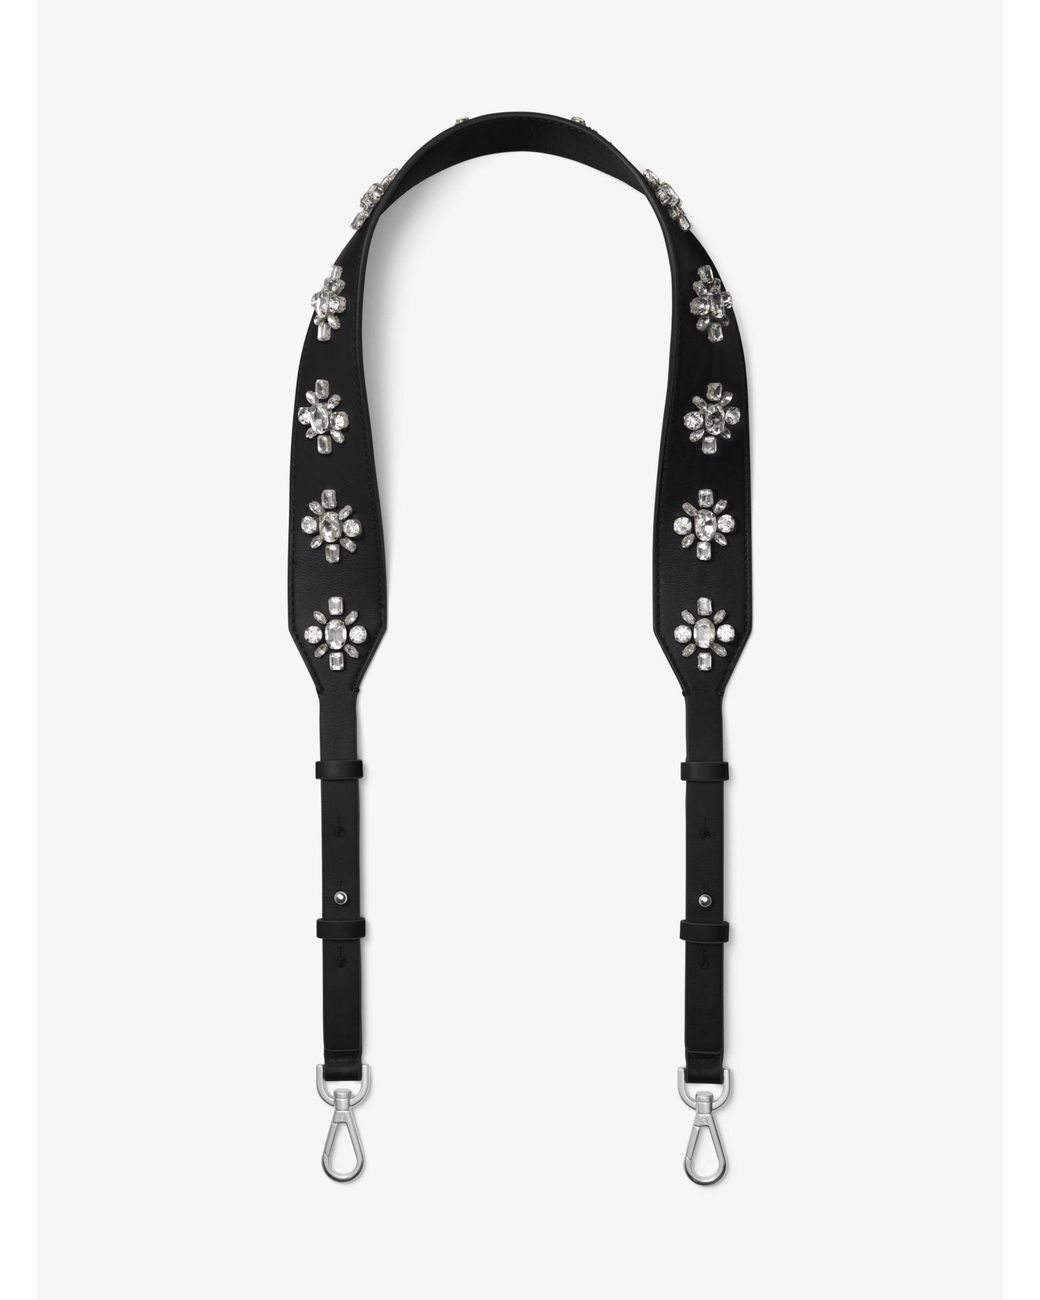 Michael Kors Floral-embellished Leather Handbag Strap in Black | Lyst  Australia